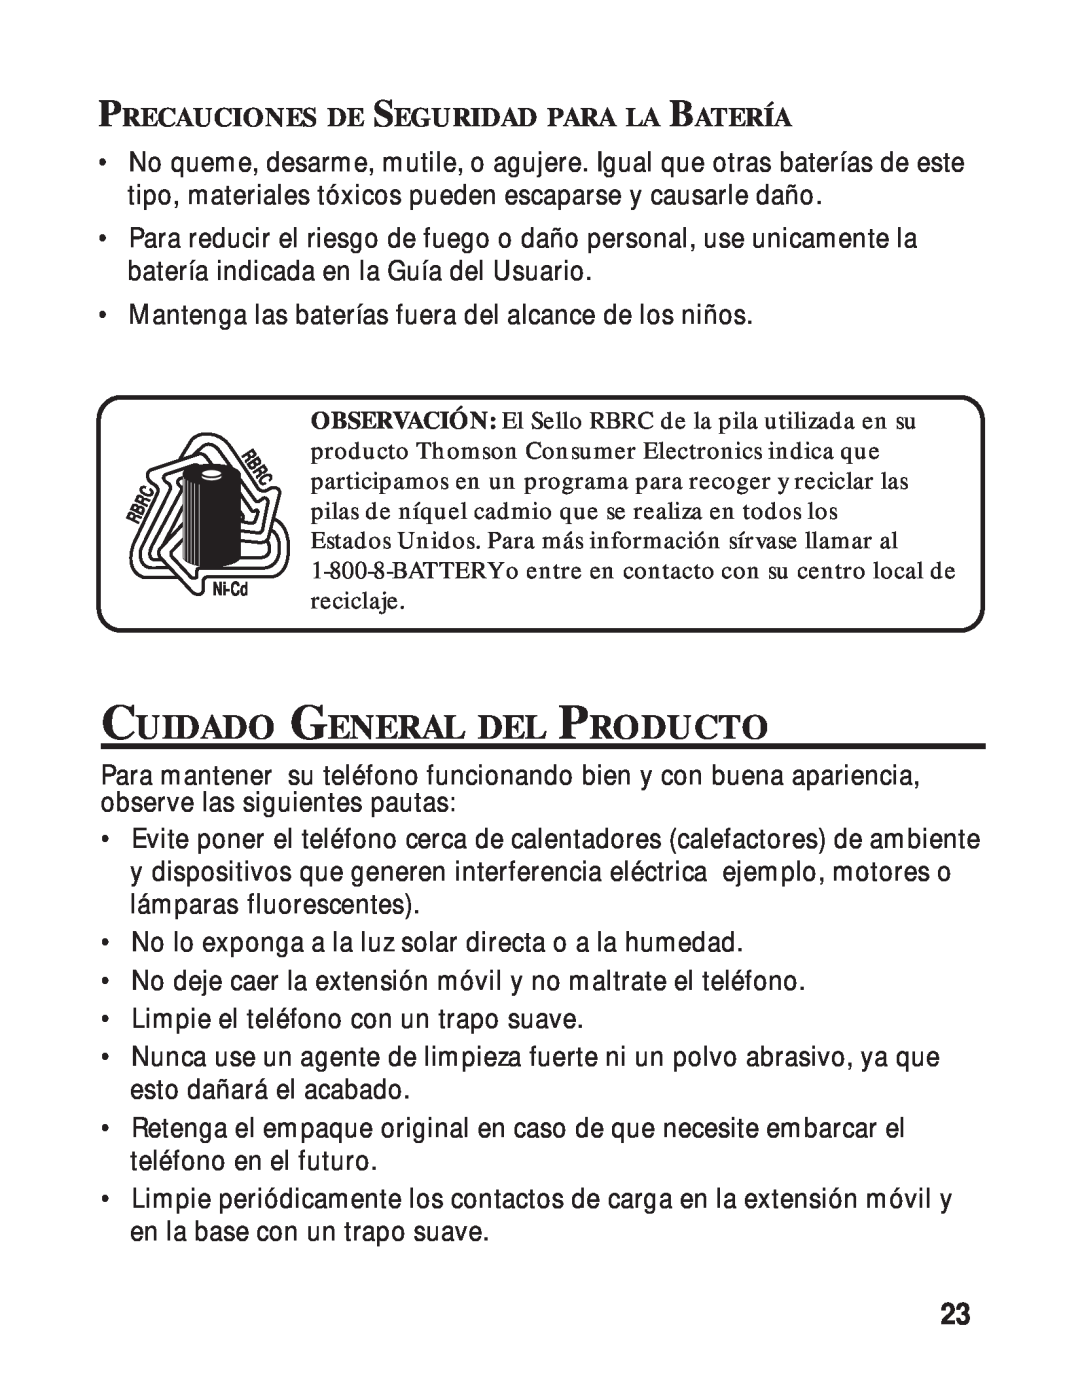 RCA 26730 manual Cuidado General Del Producto, Precauciones De Seguridad Para La Batería 